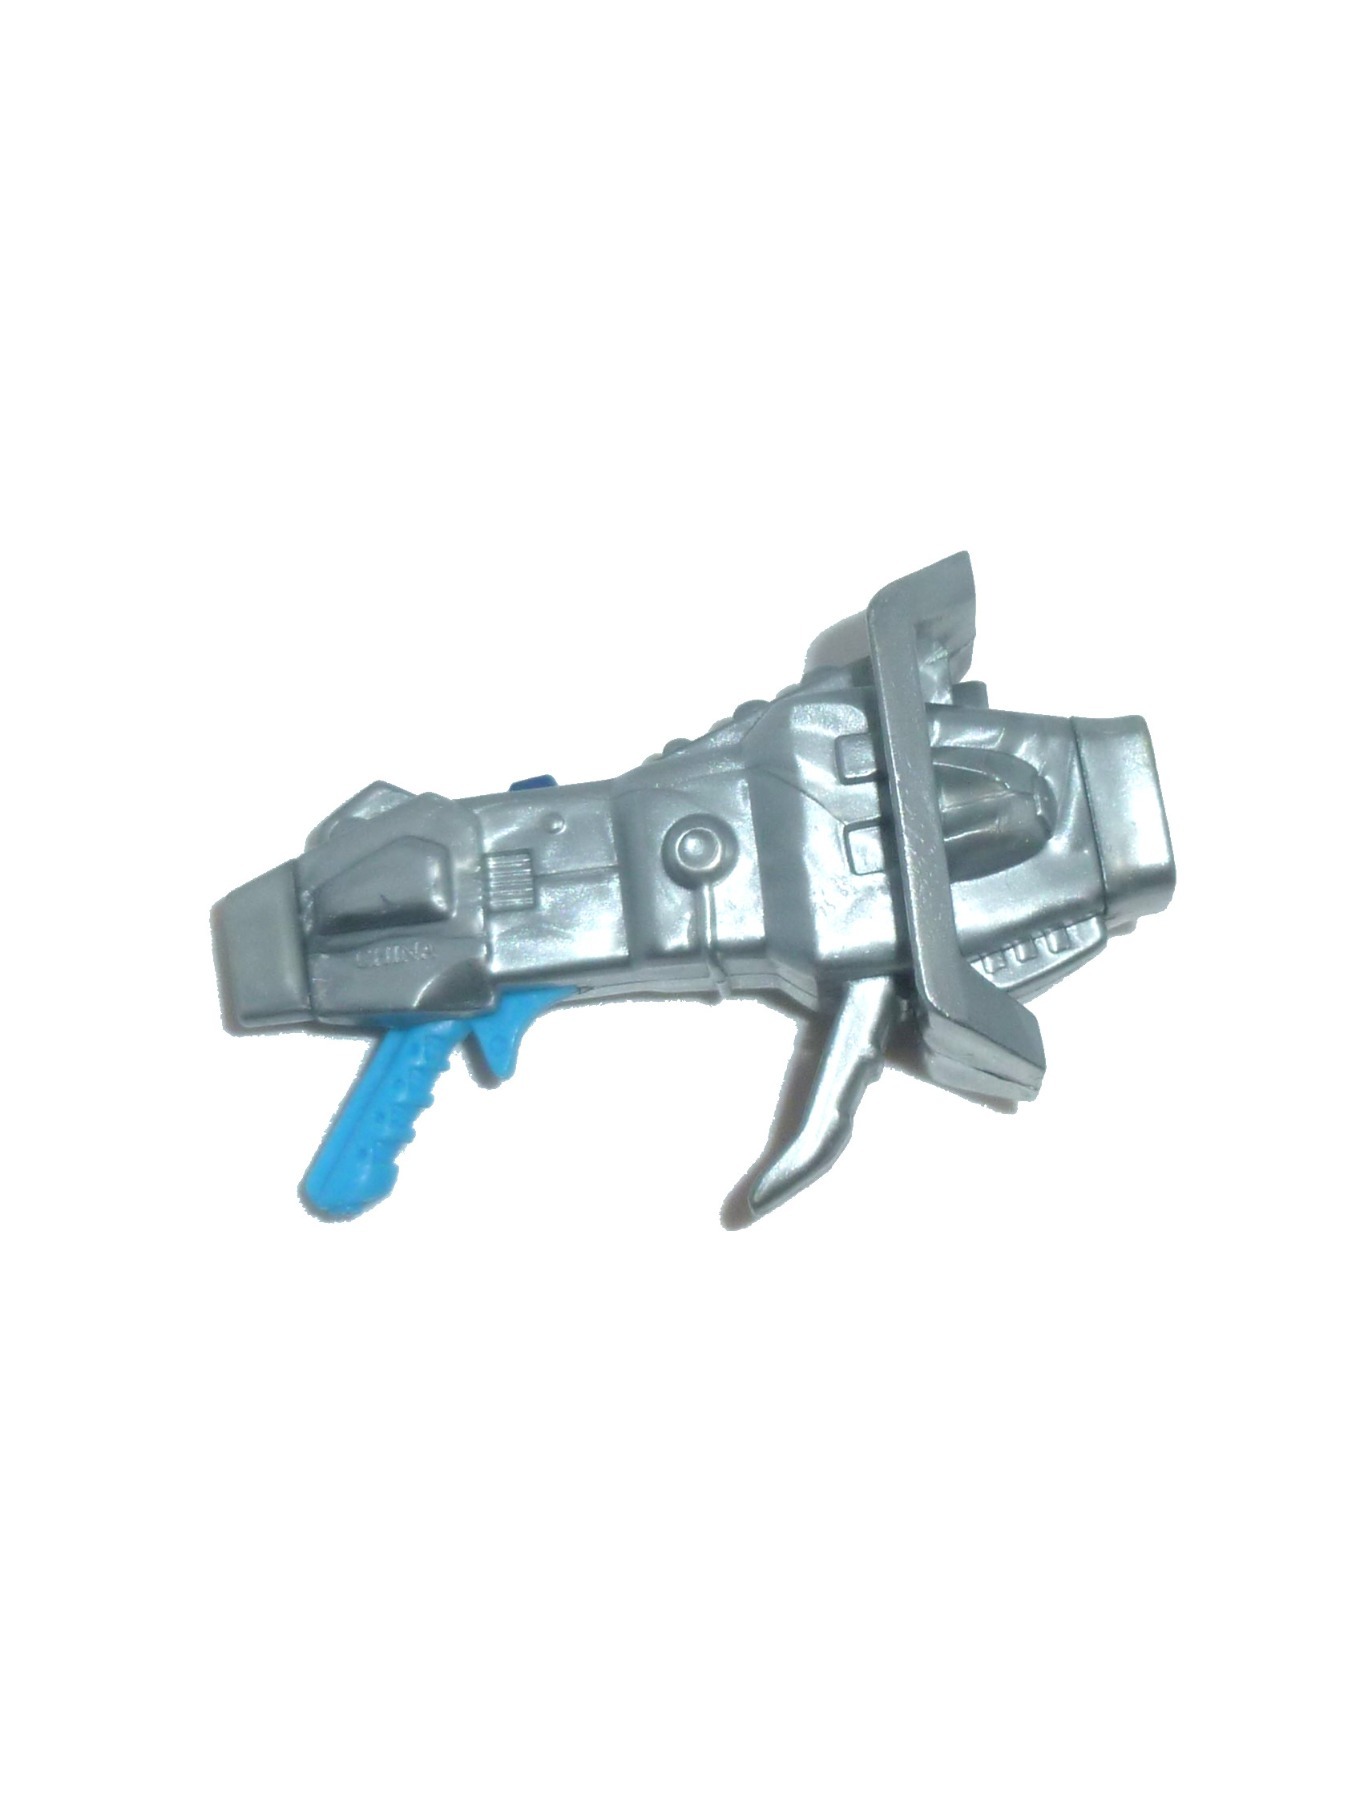 Man-E-Faces Blaster - Weapon Accessory